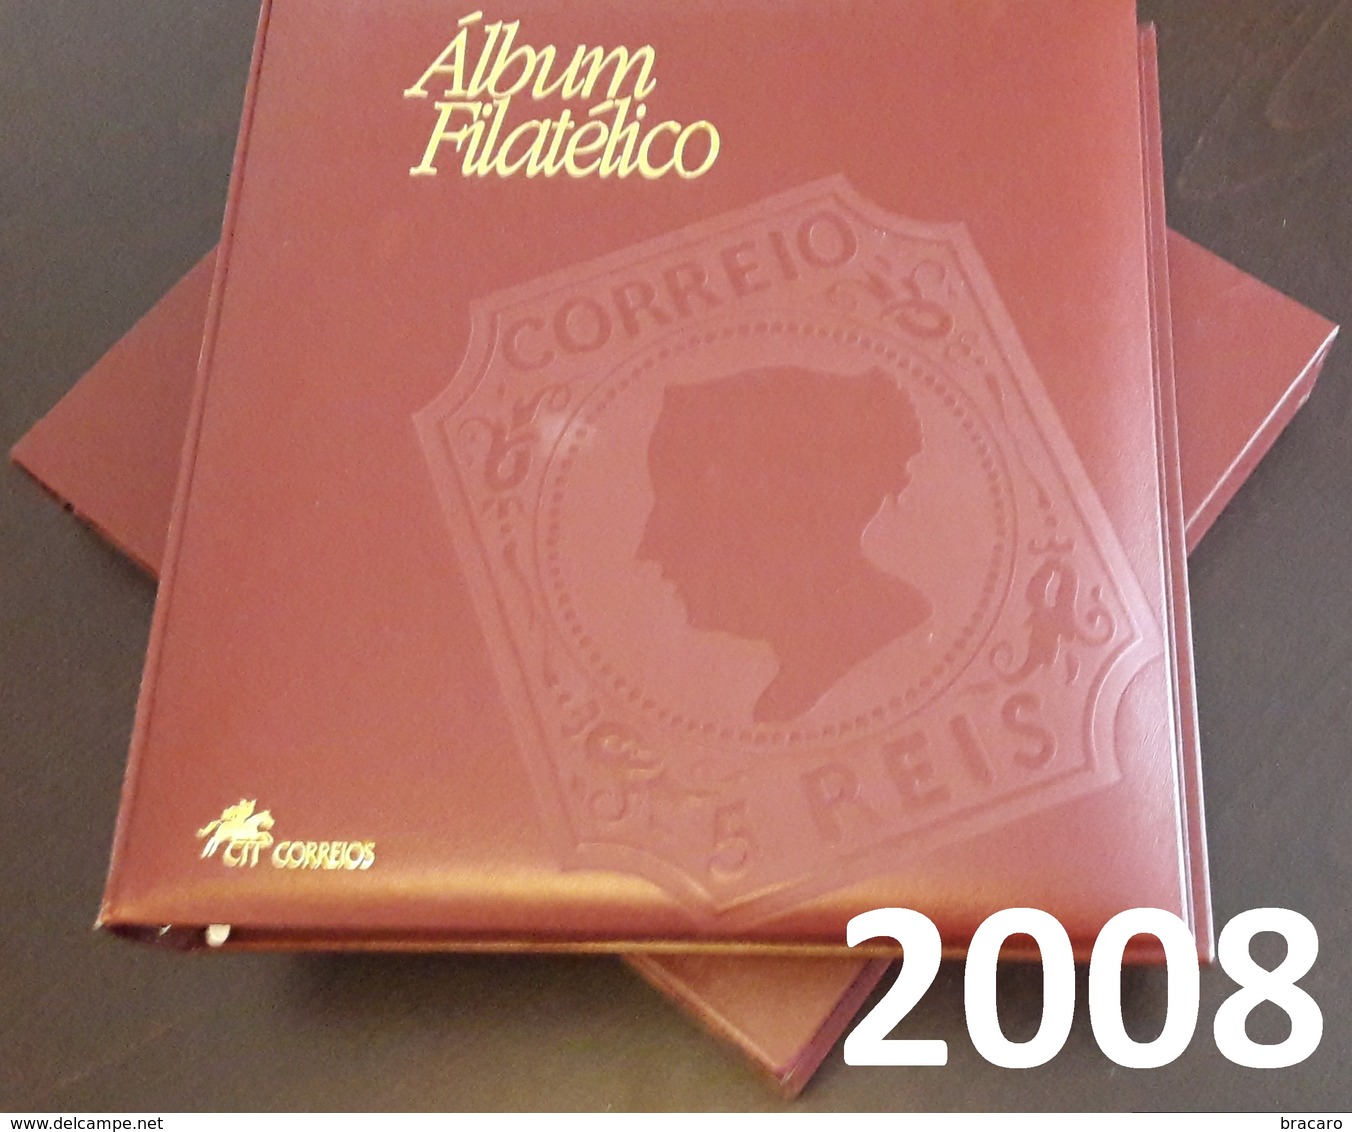 PORTUGAL - ÁLBUM FILATÉLICO - Full Year Stamps + Blocks + ATM / Machine Stamps - MNH - 2008 - Buch Des Jahres